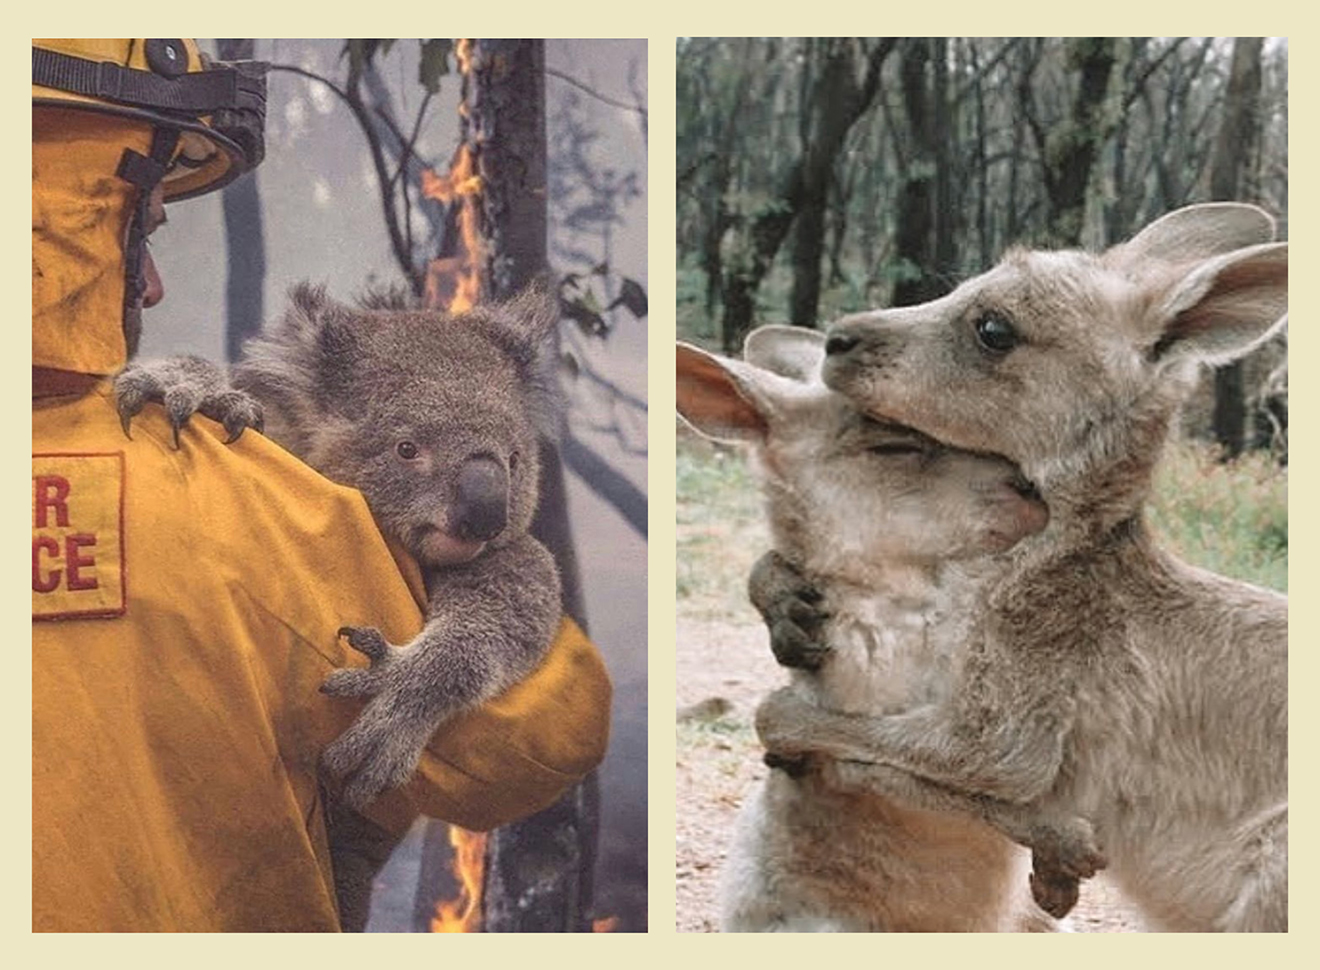 Koala being rescued